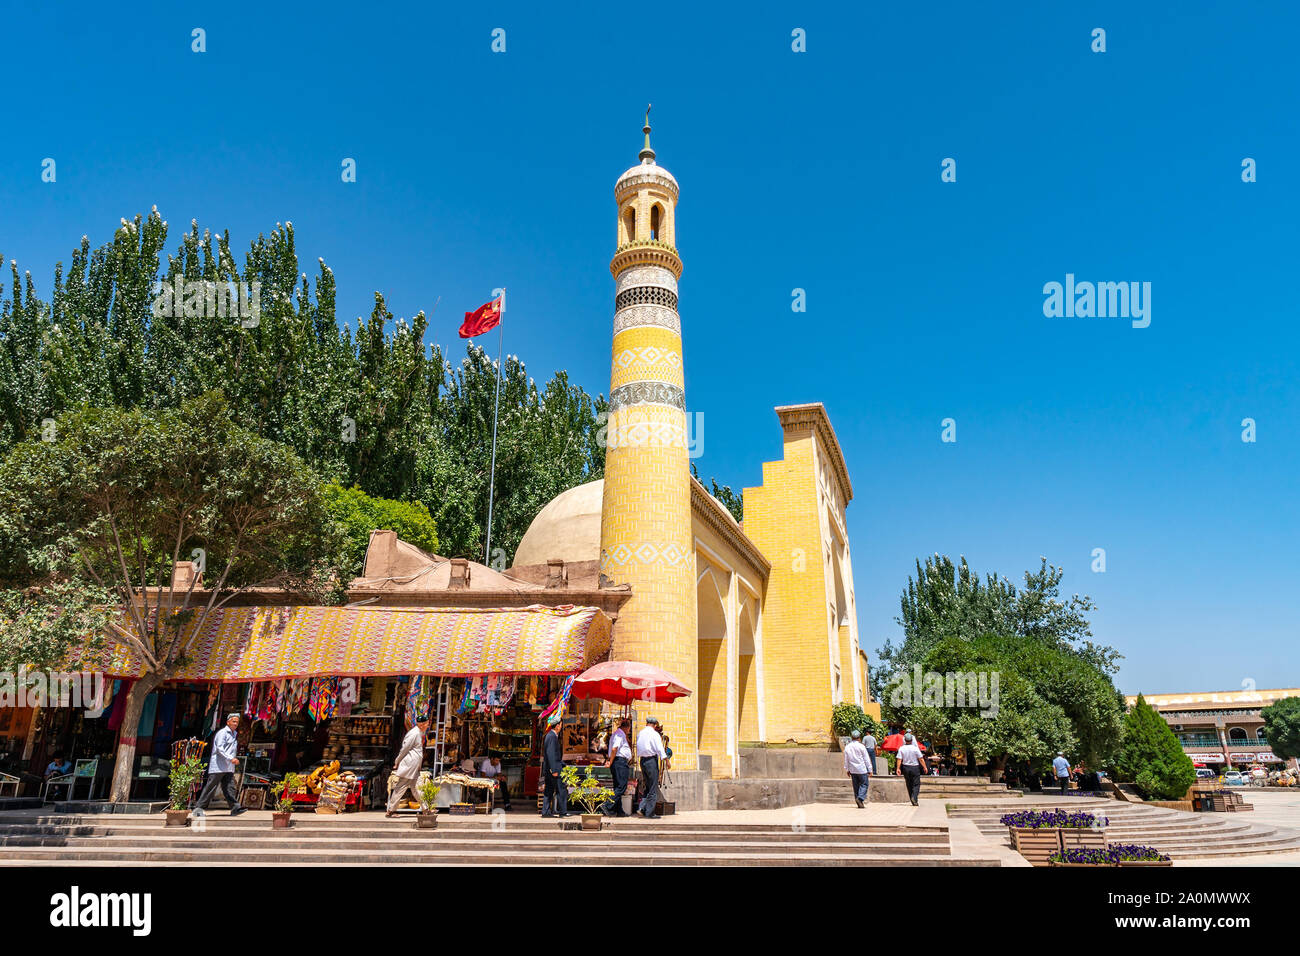 La mosquée Id Kah à Kashgar avec une forme Chine Drapeau sur le sommet du toit et les hommes Ouïghours avec Doppa Hat sur leur tête sur un ciel bleu ensoleillé Jour Banque D'Images